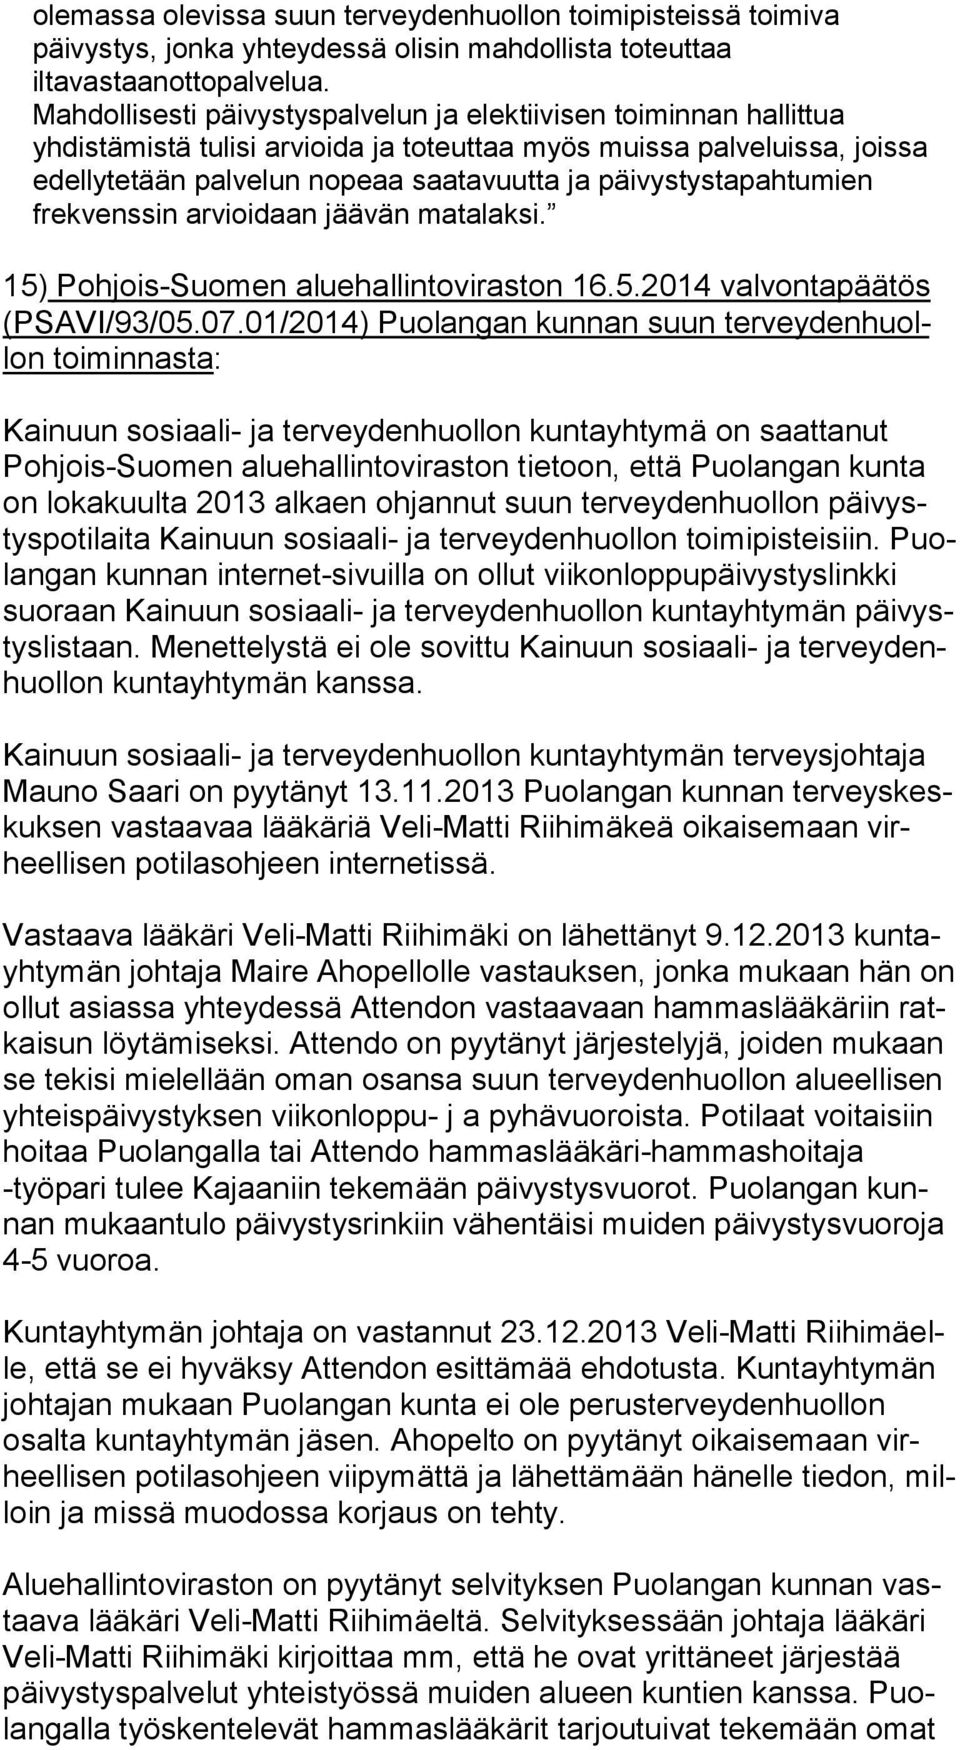 päivystystapahtumien frekvenssin arvioidaan jäävän matalaksi. 15) Pohjois-Suomen aluehallintoviraston 16.5.2014 valvontapäätös (PSA VI/93/05.07.